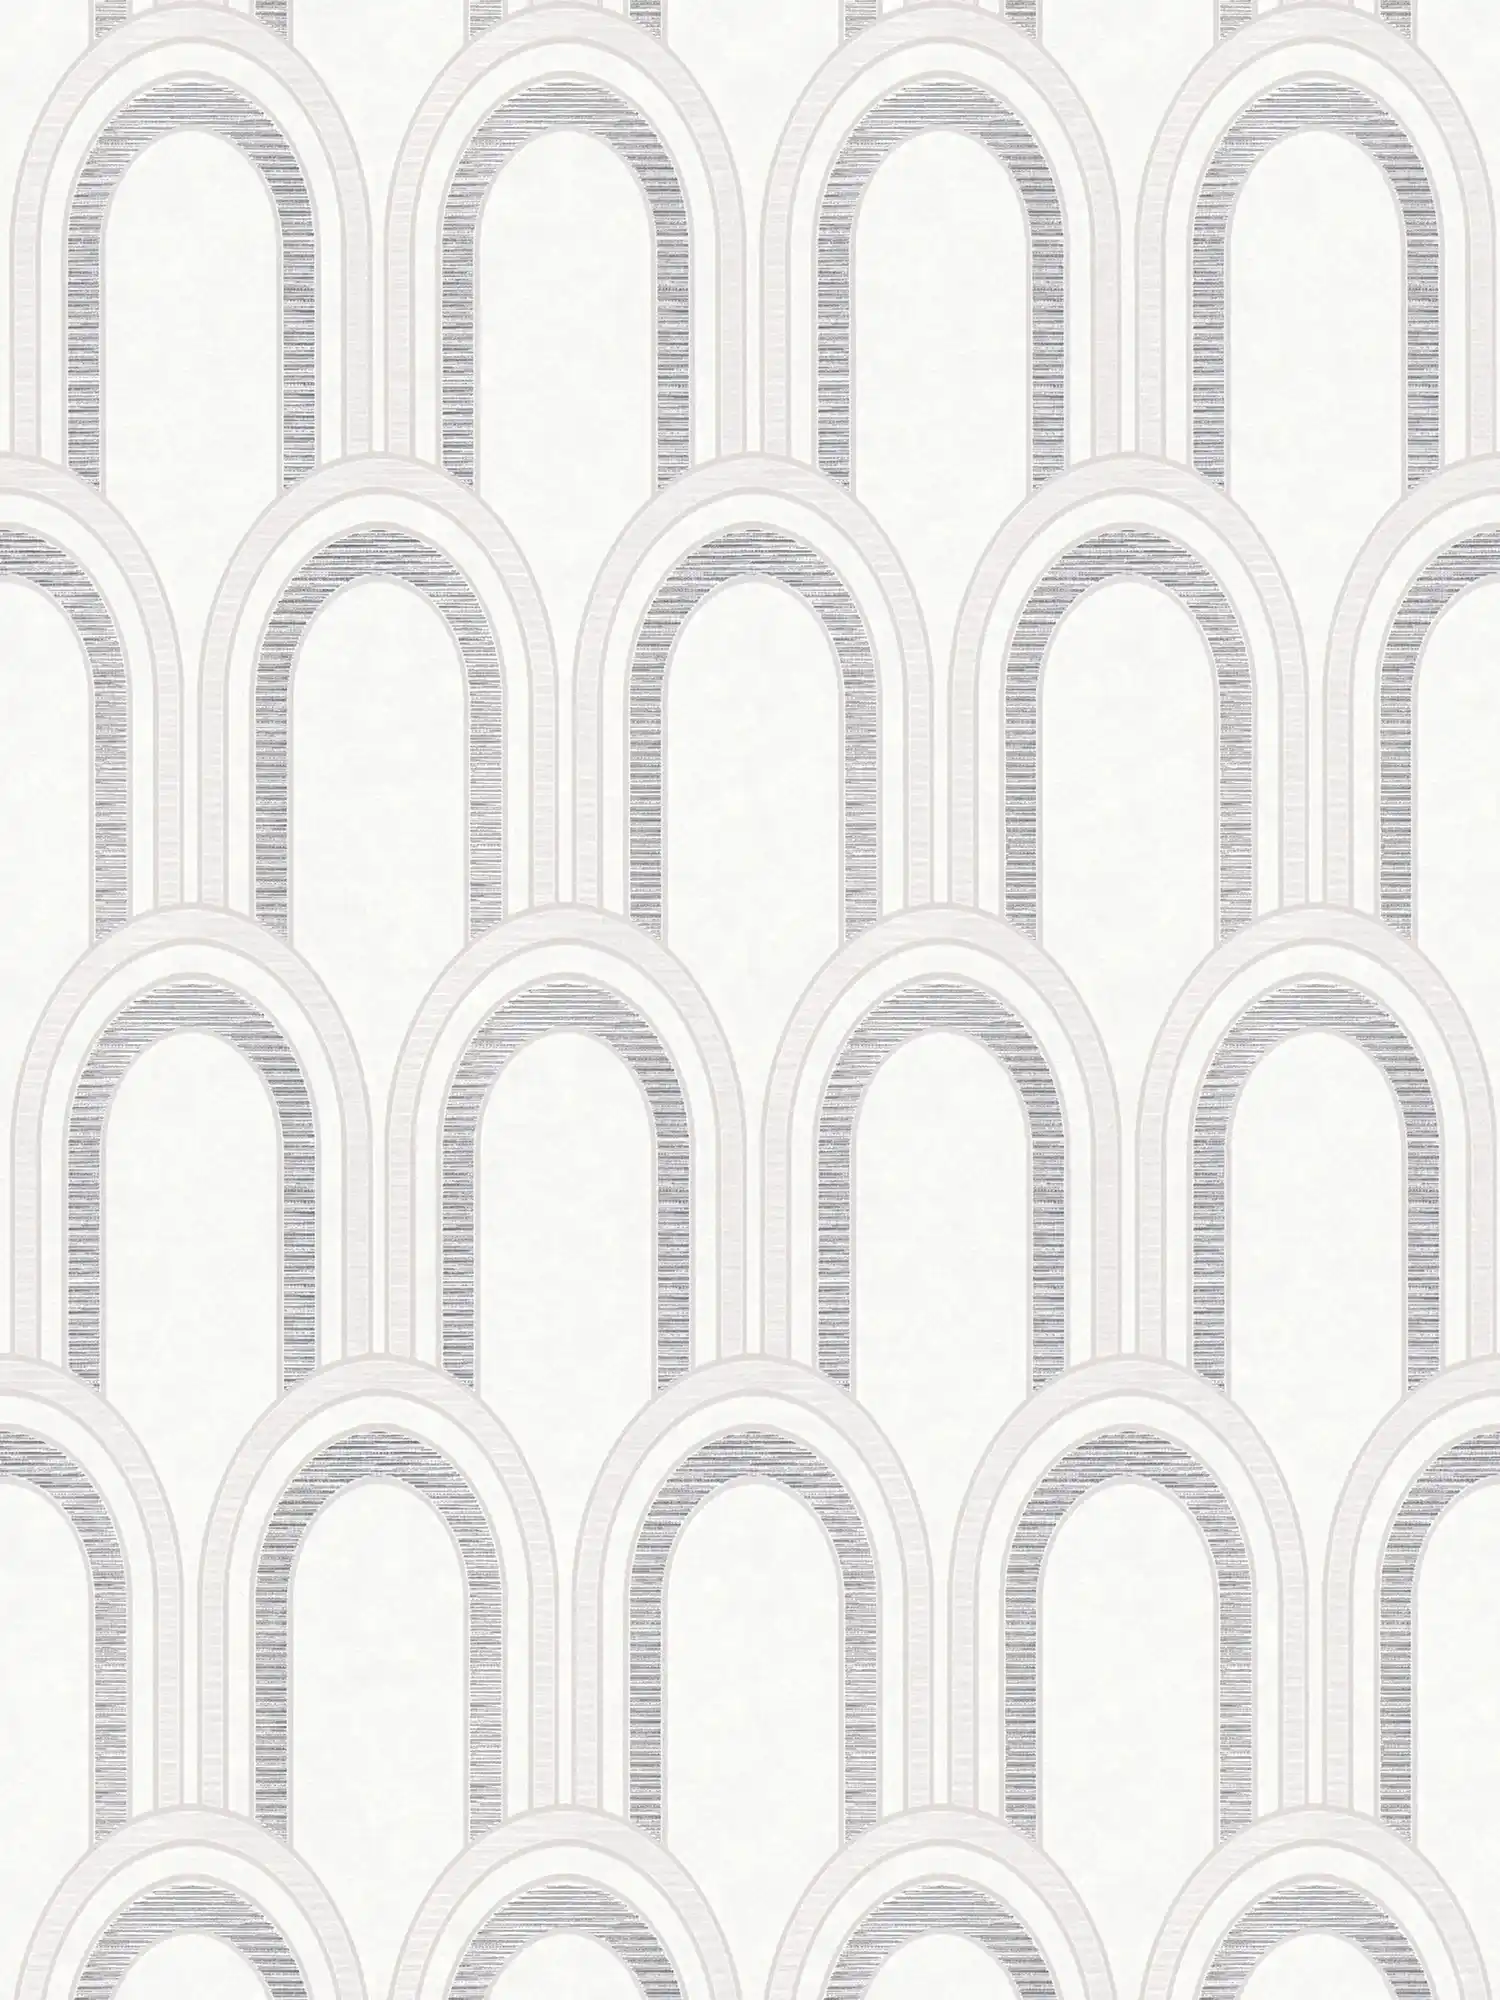 Vliestapete in Bogenoptik mit Glanzeffekt – Weiß, Grau, Silber
